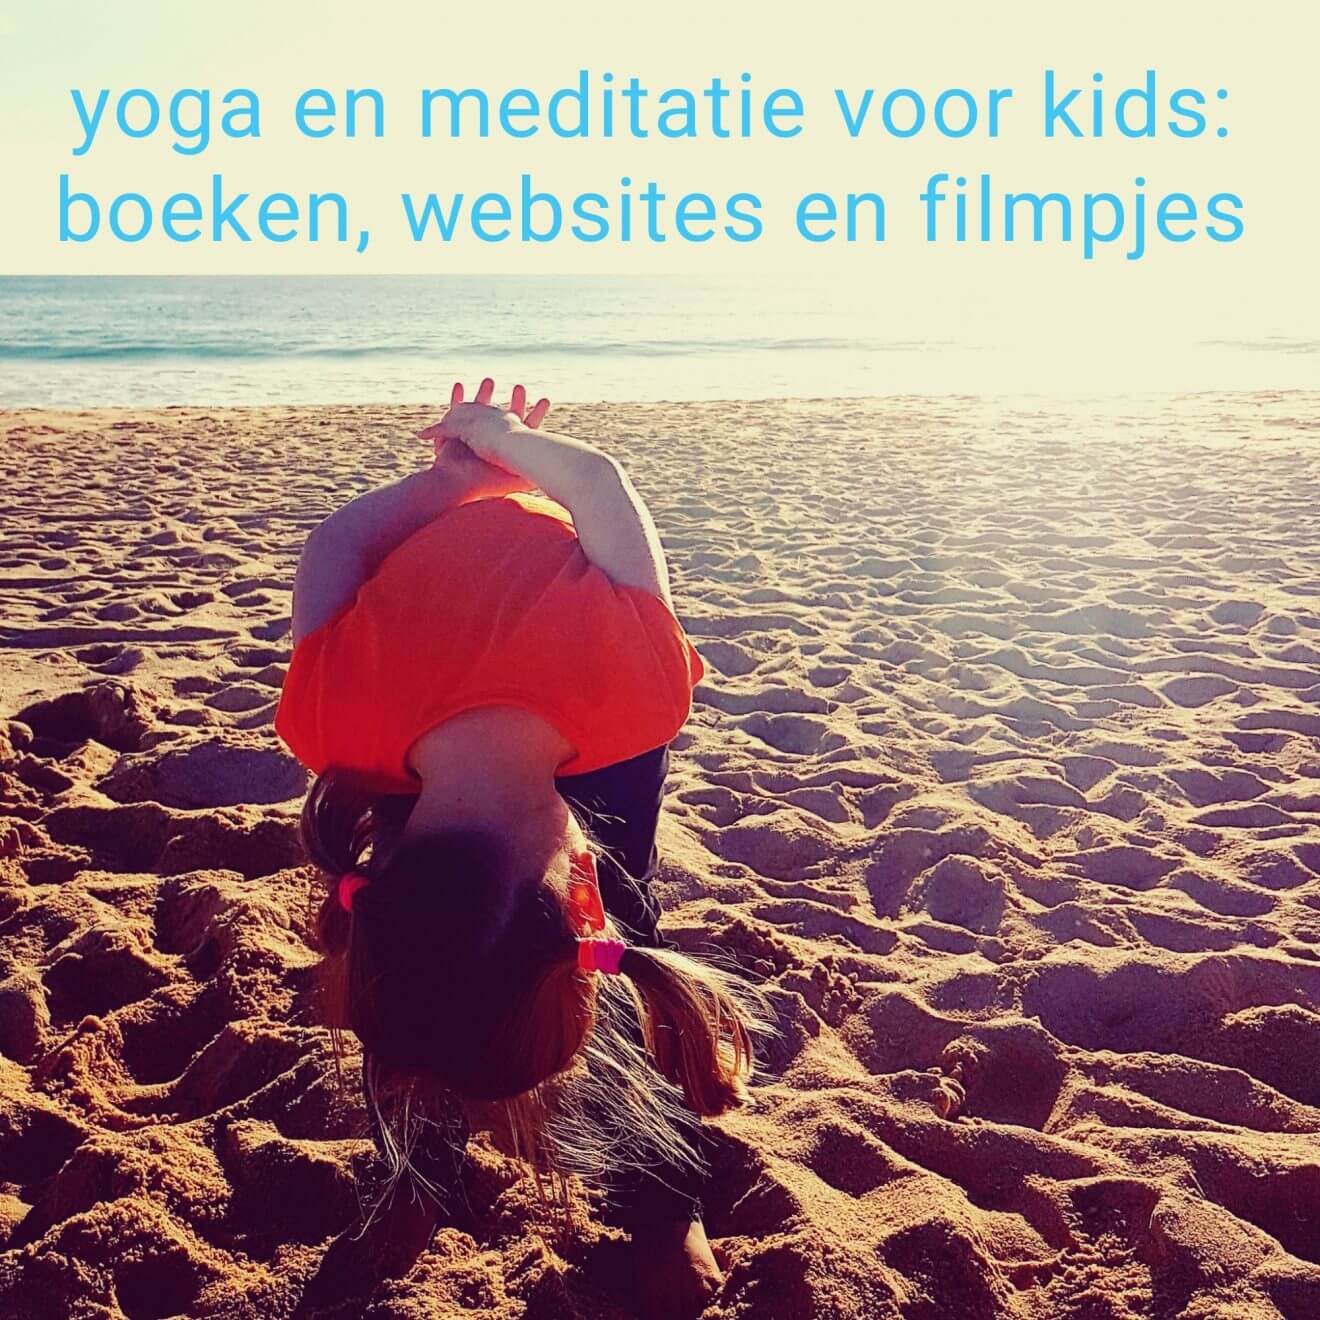 Yoga en meditatie voor kids: de leukste boeken, websites en youtube filmpjes voor kinderen